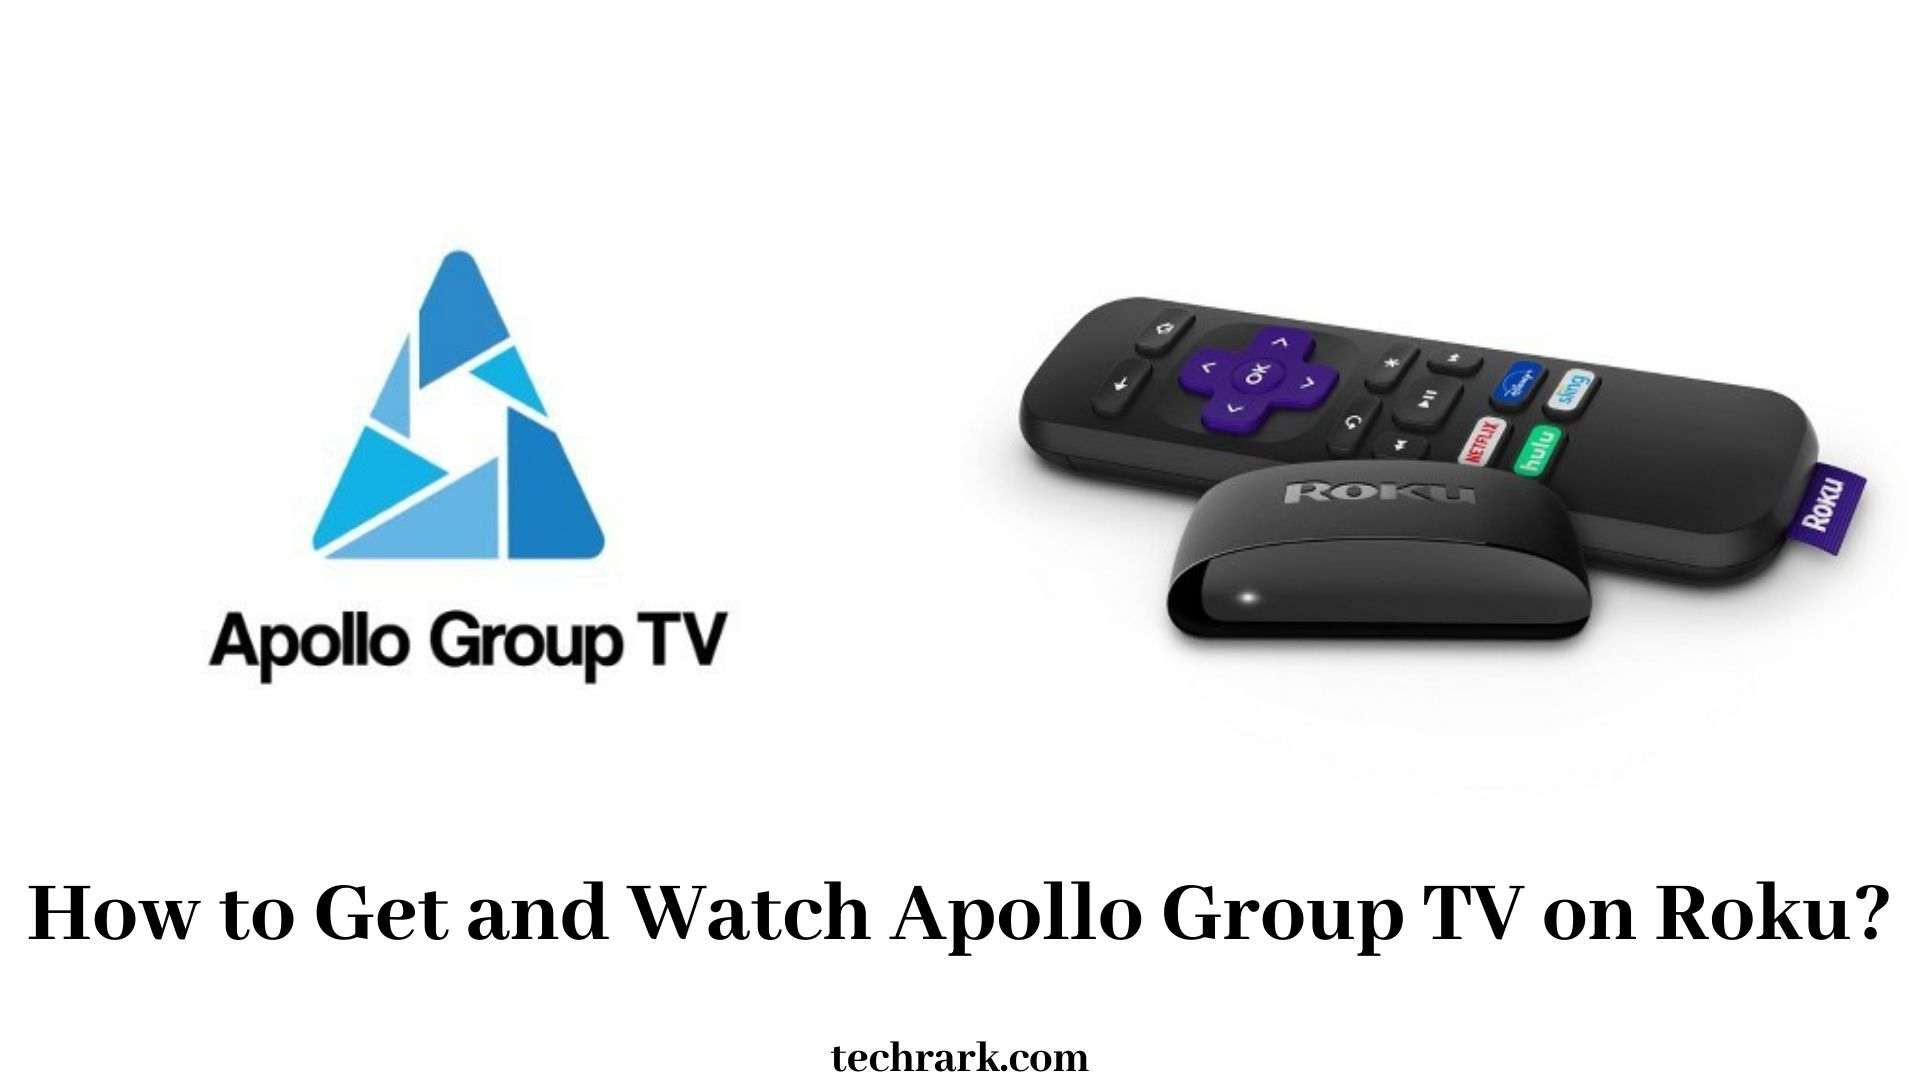 Apollo Group TV on Roku